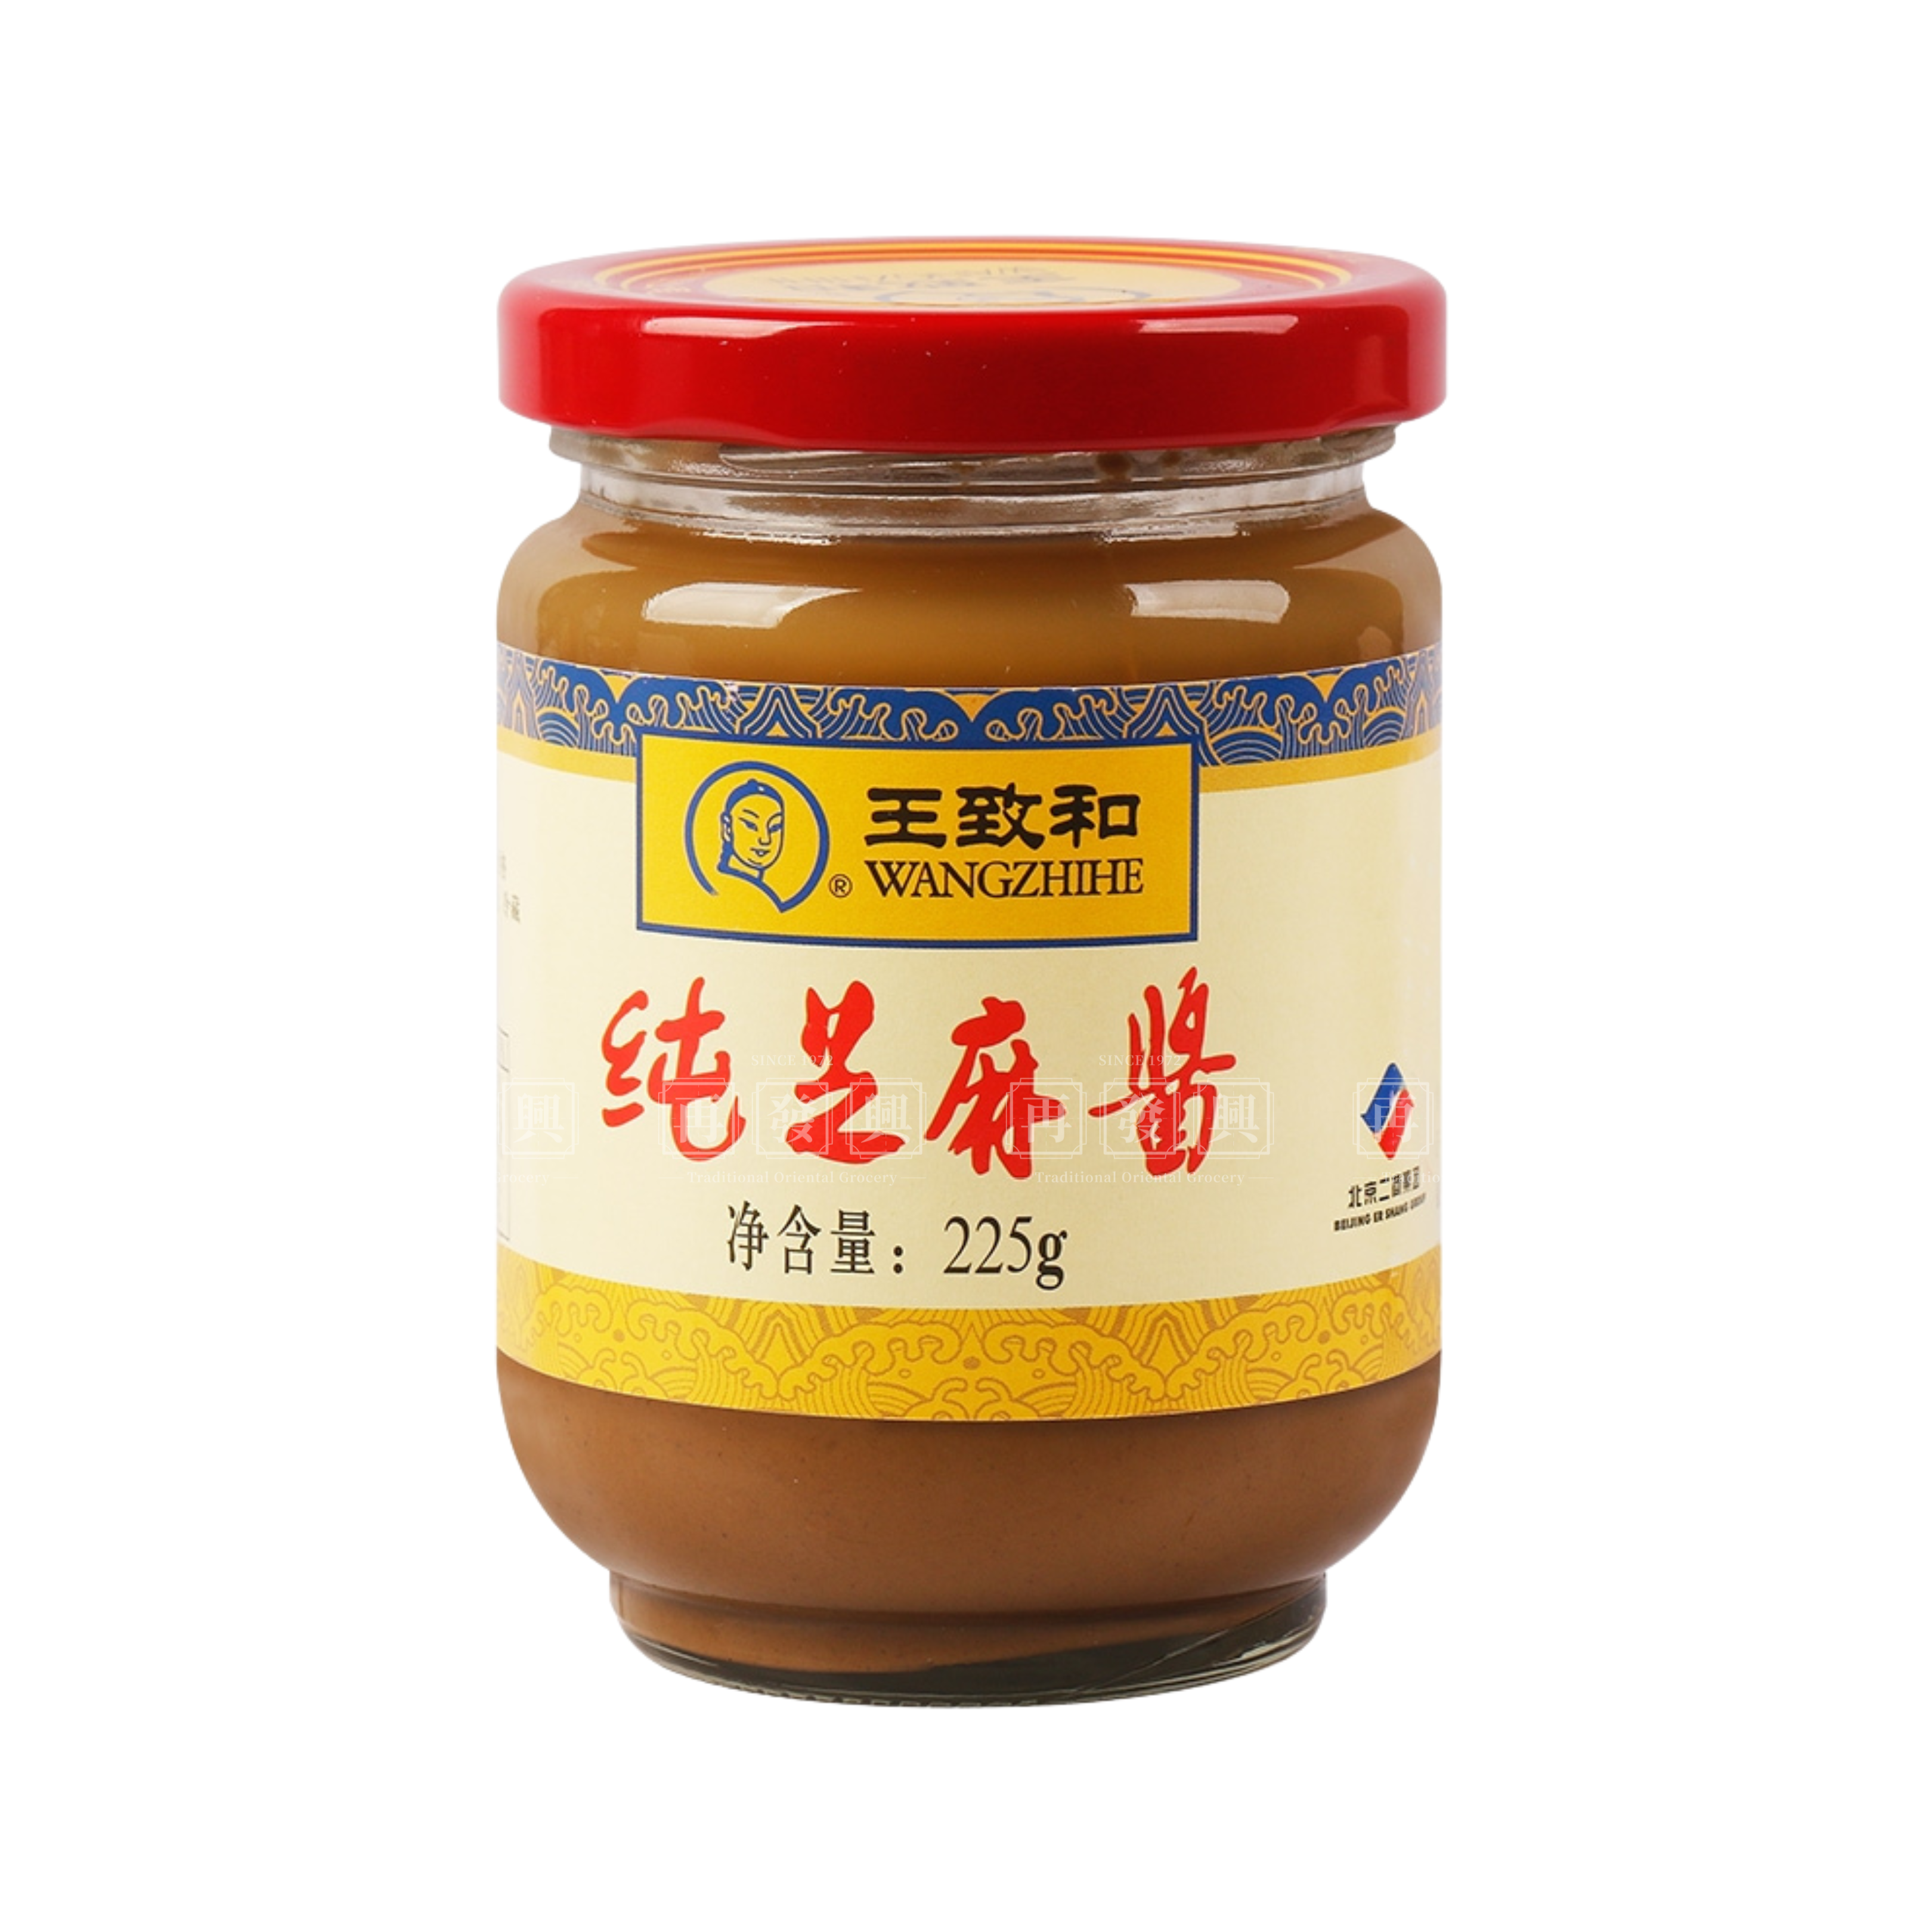 Wang Zhi He Pure Sesame Paste 王致和纯芝麻酱 225g